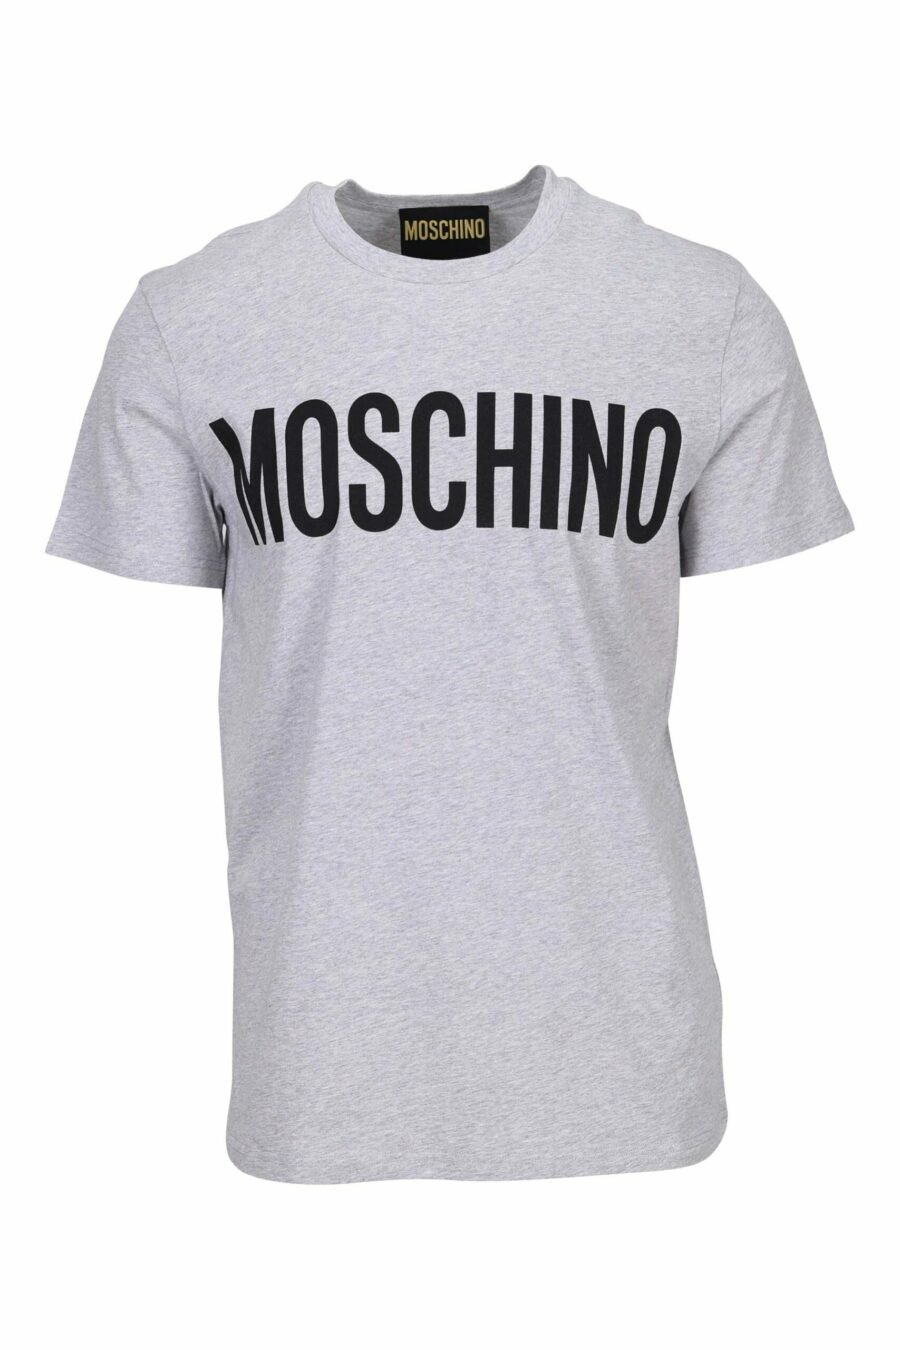 Camiseta gris "oversize" de algodón orgánico con maxilogo negro clásico - 667113751986 scaled